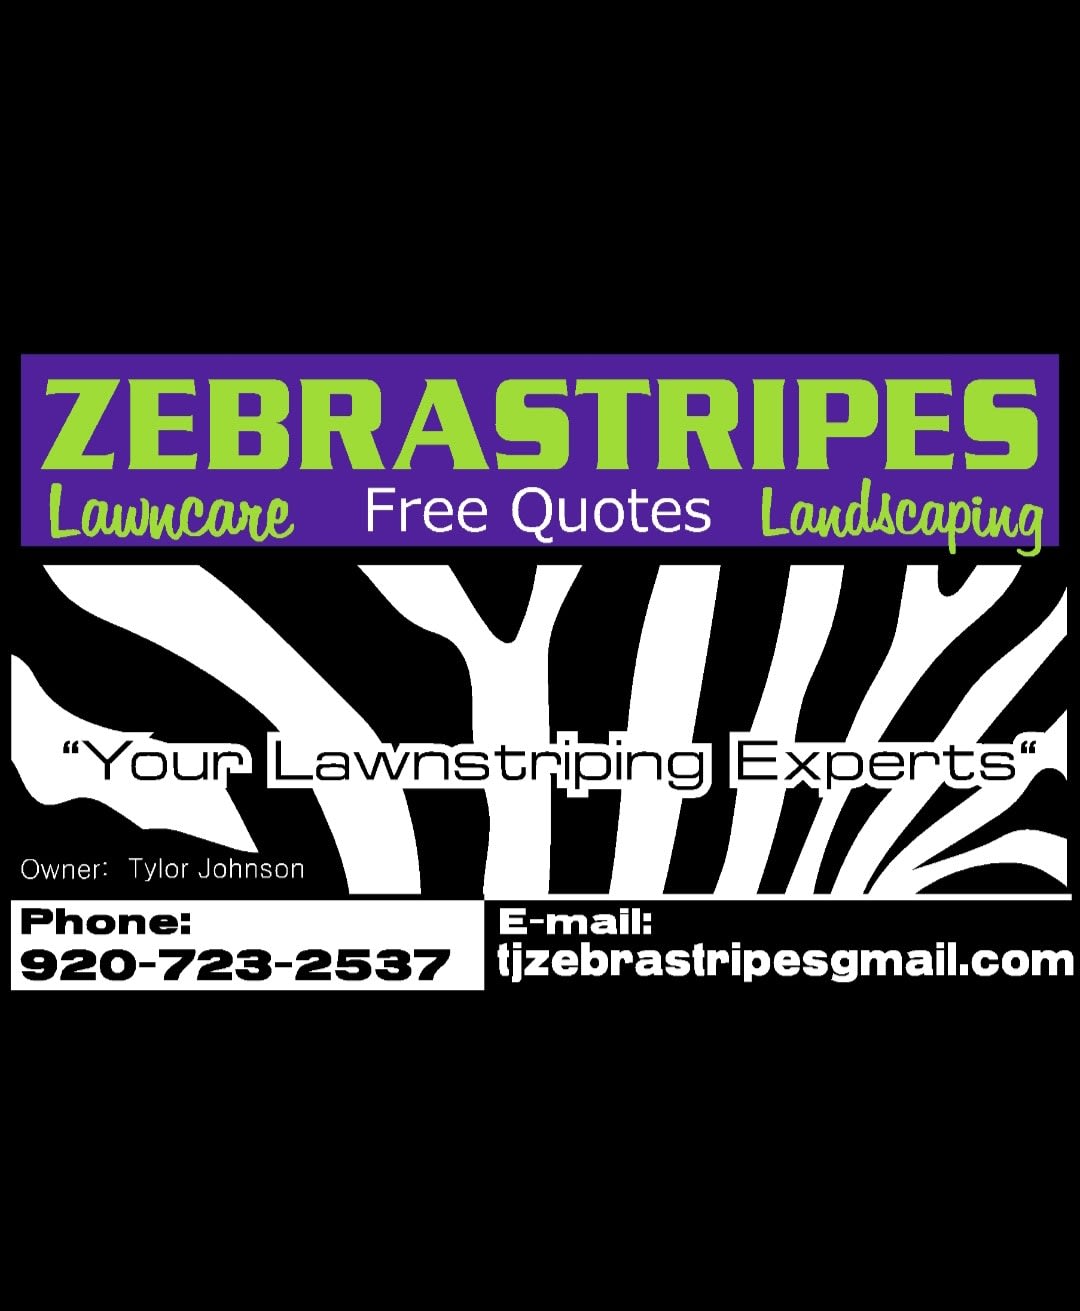 TJ Zebra Stripes